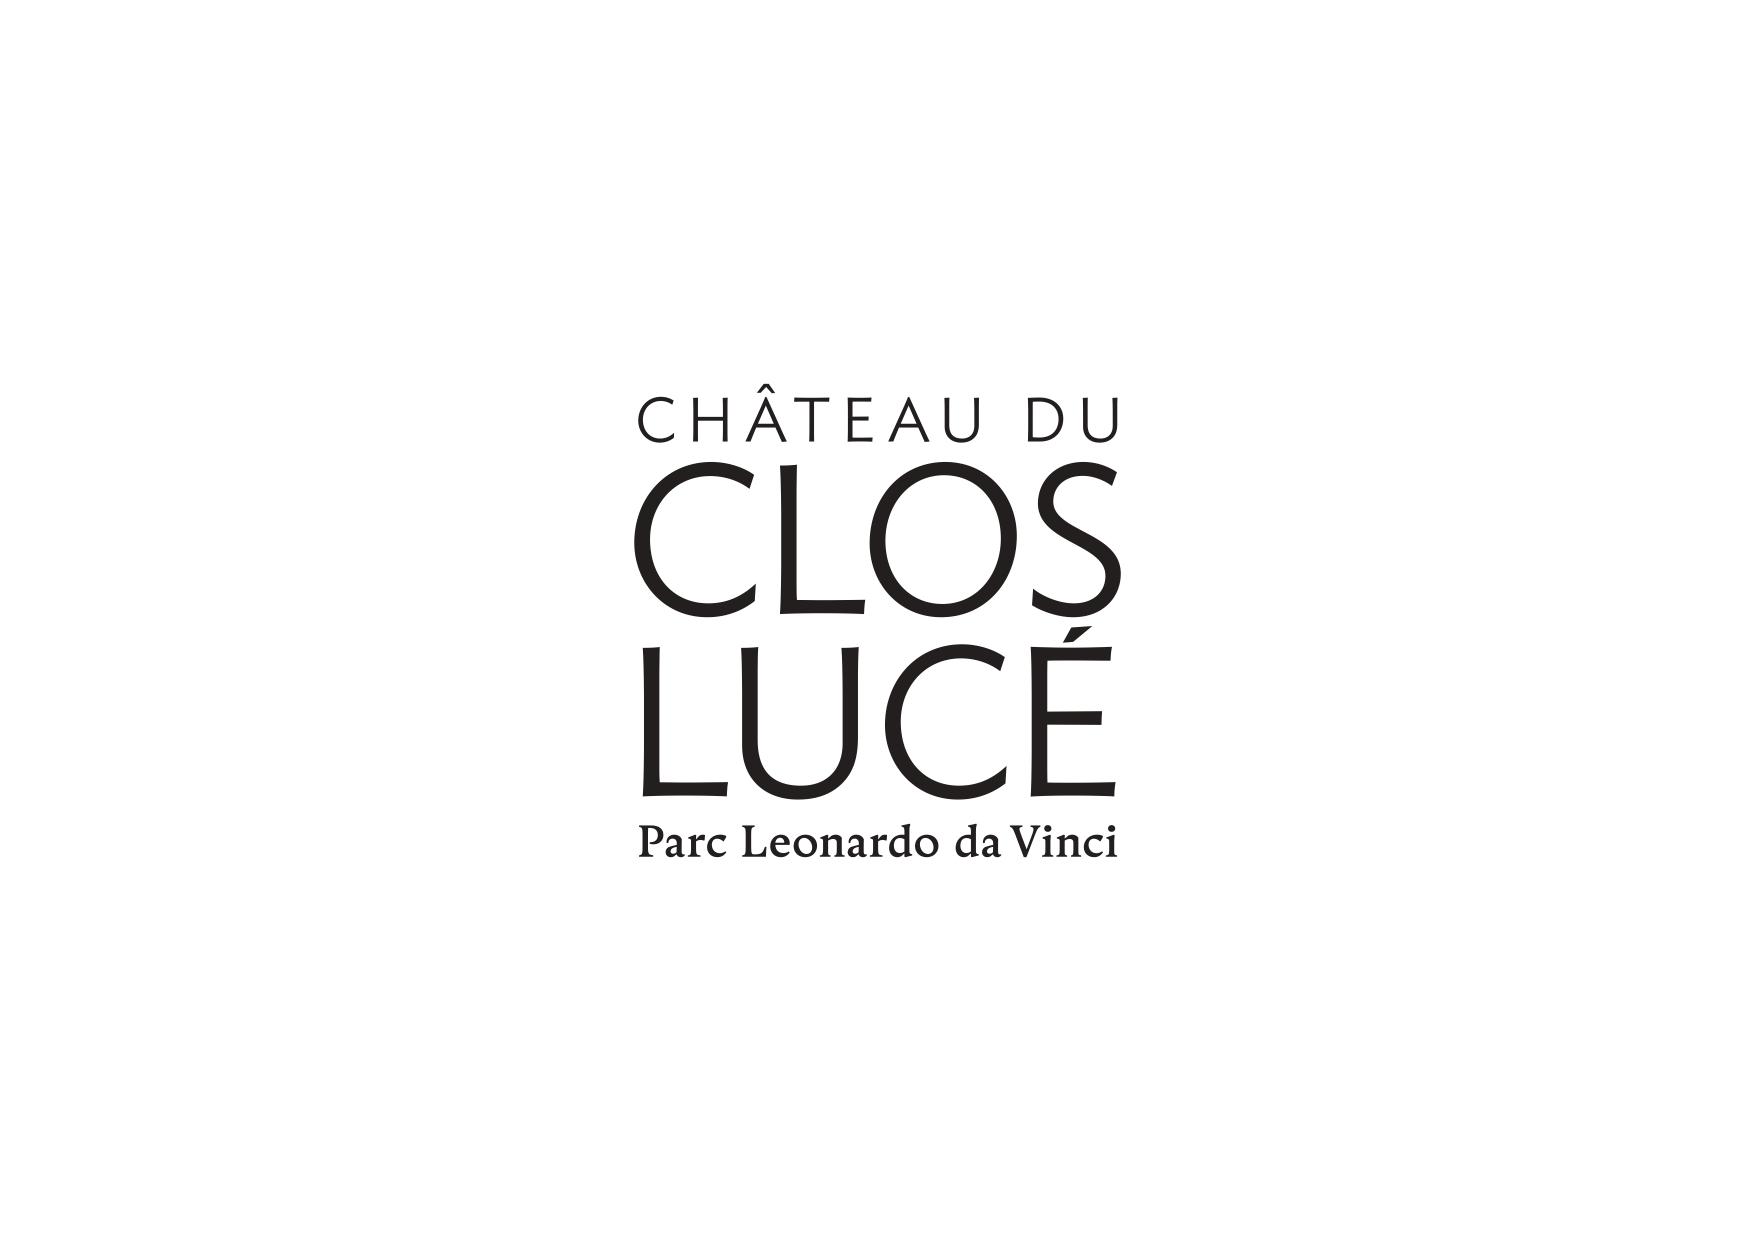 Logo Chateaux du clos luc\u00e9